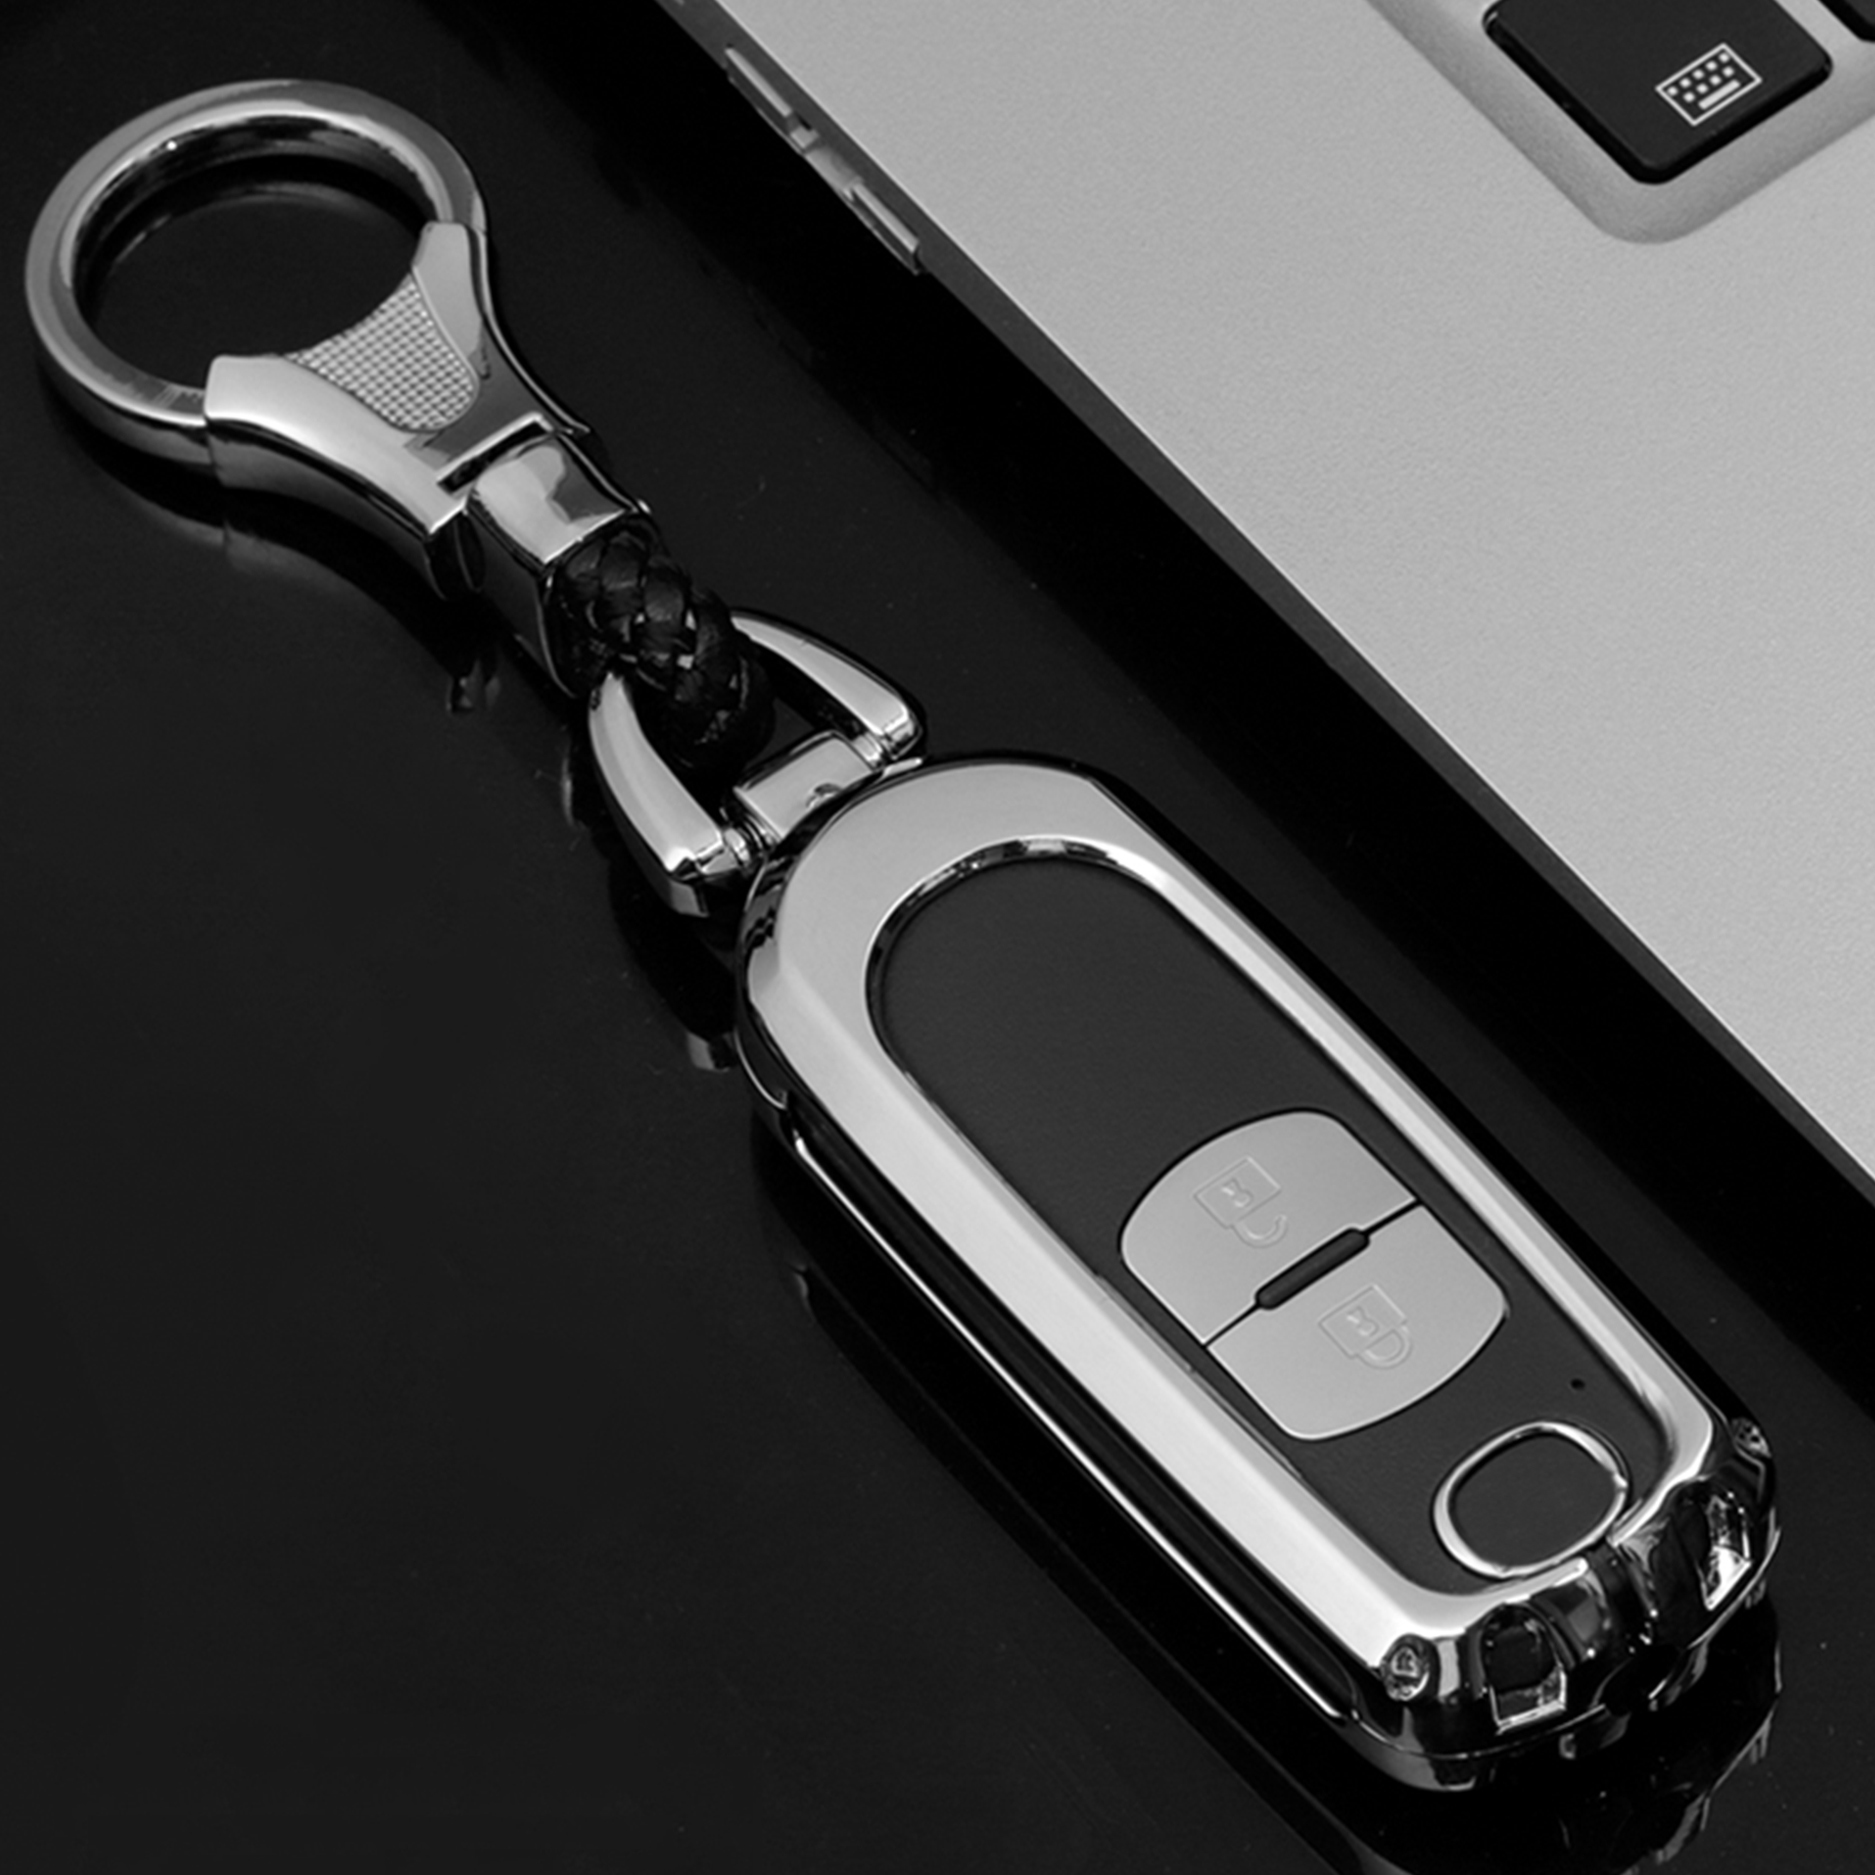 Ốp chìa khóa mazda, 3, 2, 6, cx5, cx8 chất liệu metal cao cấp, bảo vệ smartkey tuyệt đối, kiểu dáng sang trọng và hiện đại